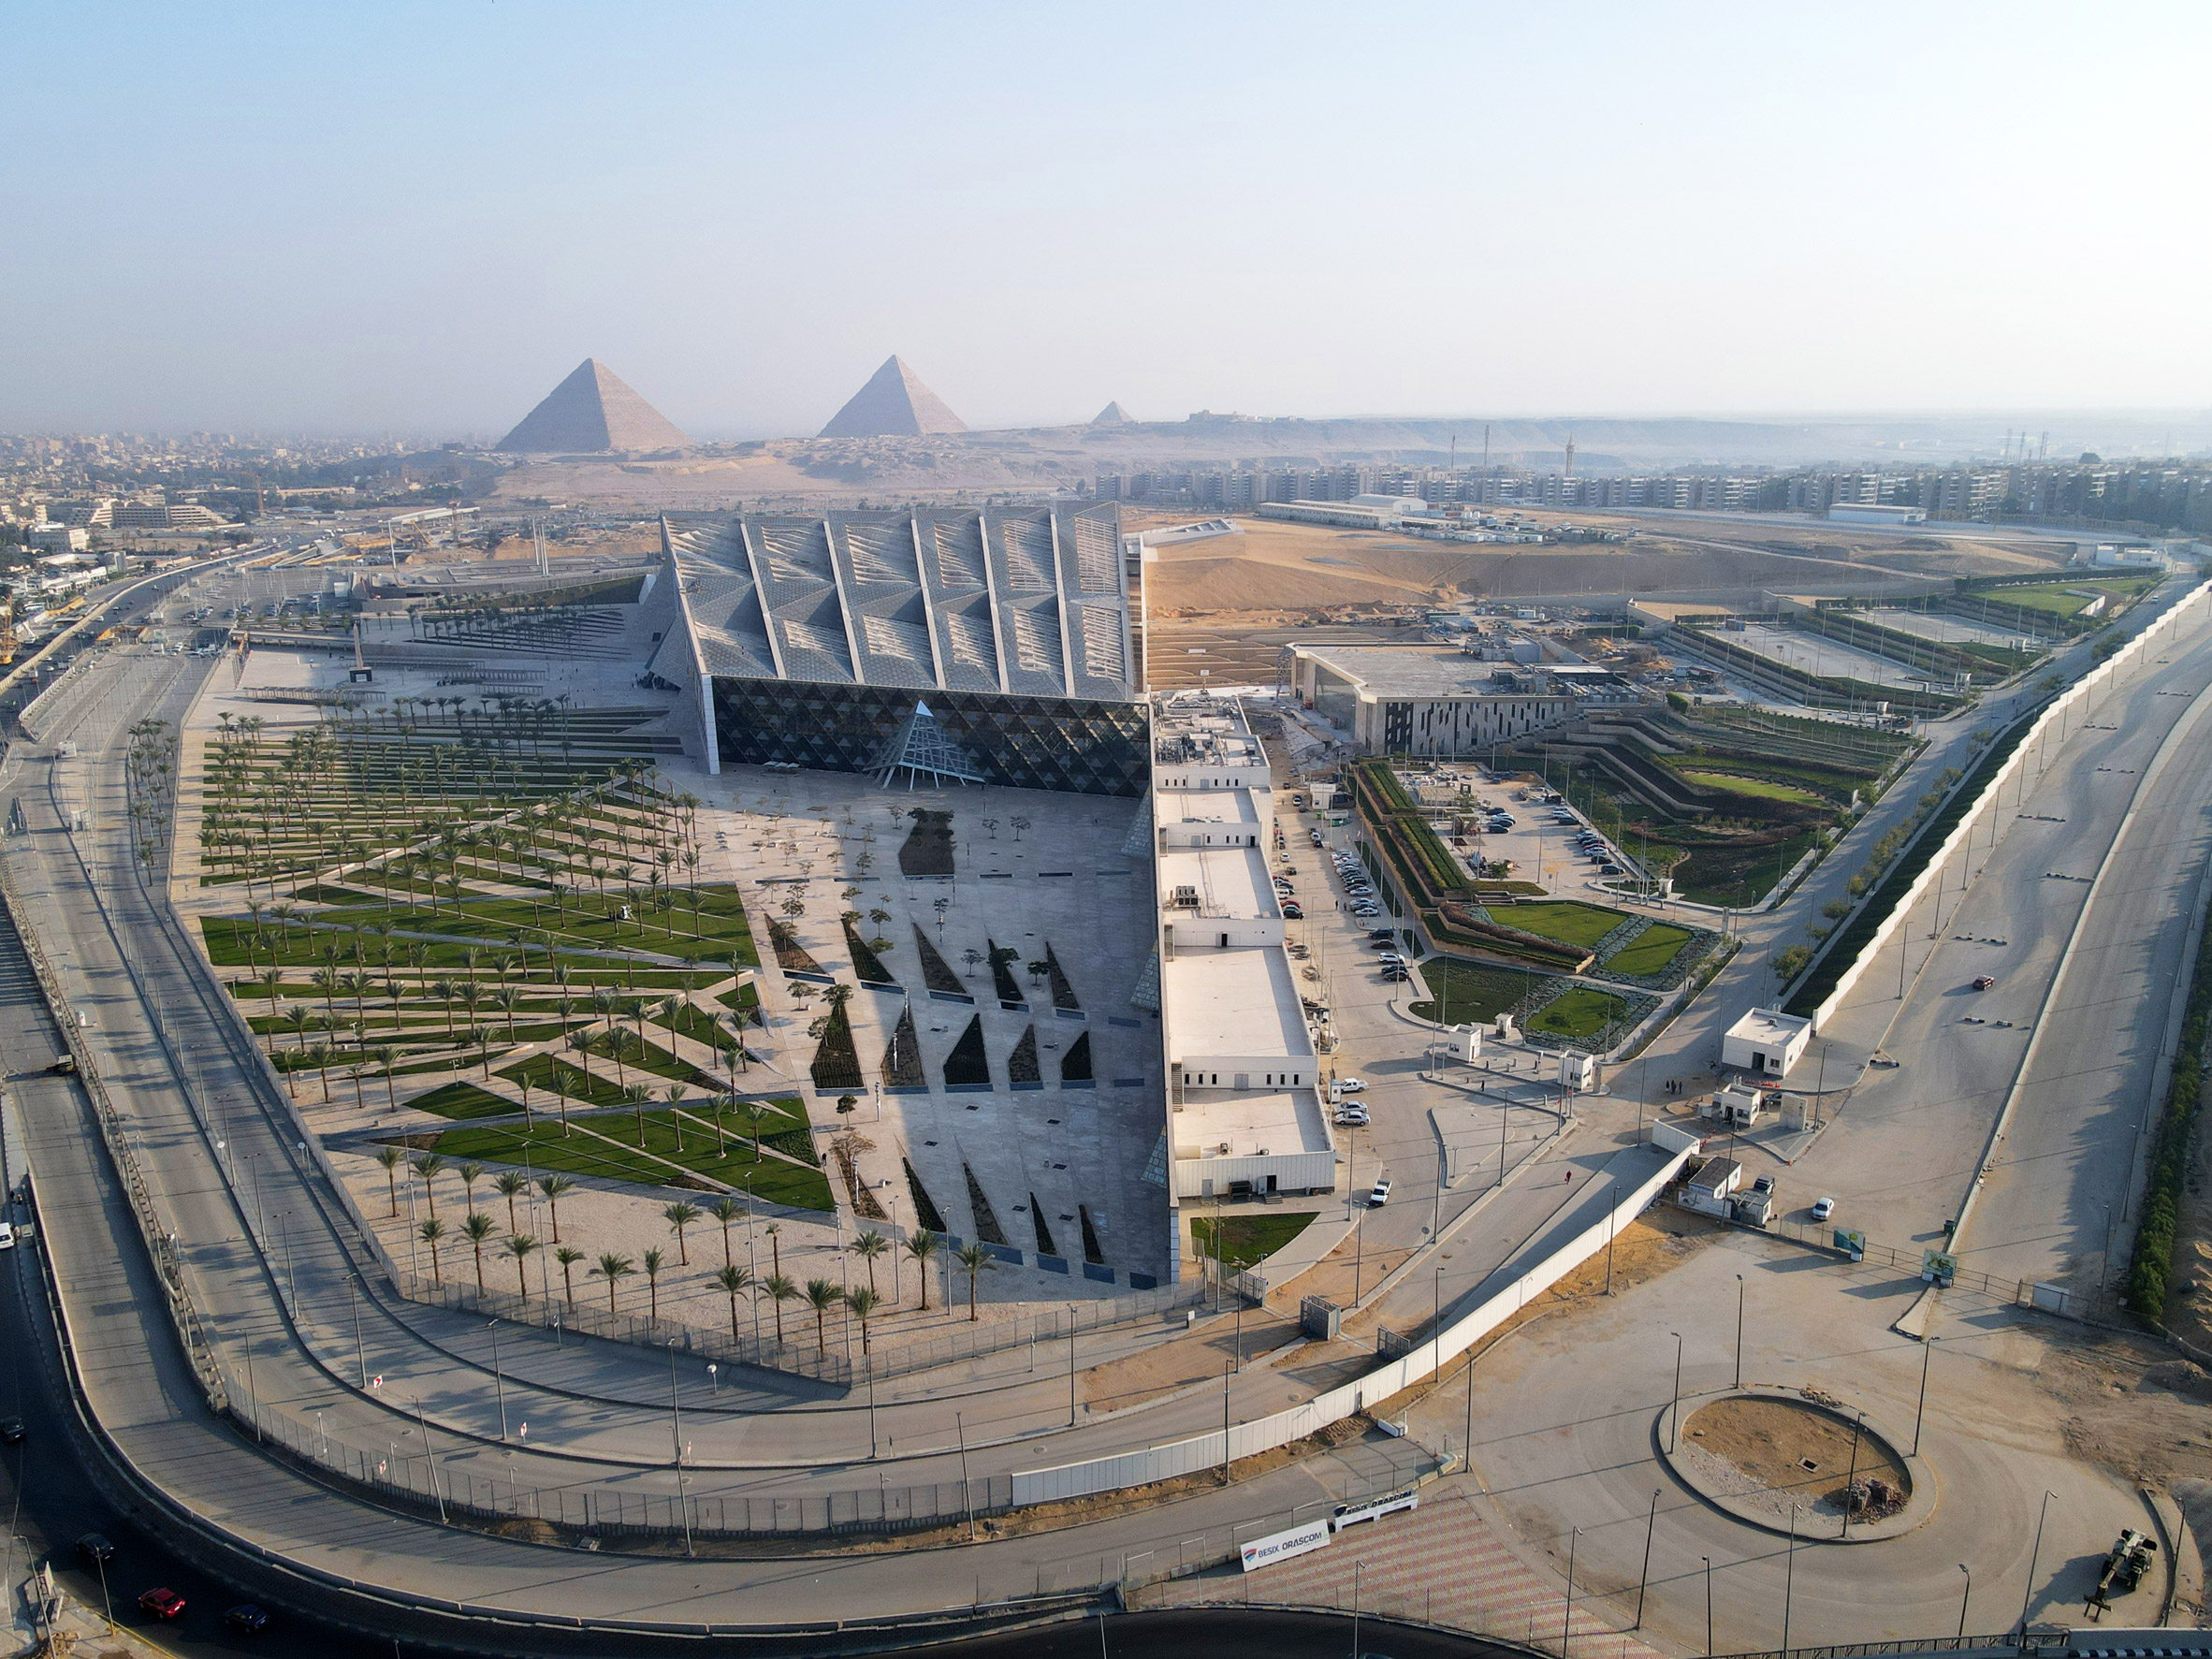 世界上最大的博物馆在埃及开幕前被捕获|ART-Arrakis | 建筑室内设计的创新与灵感